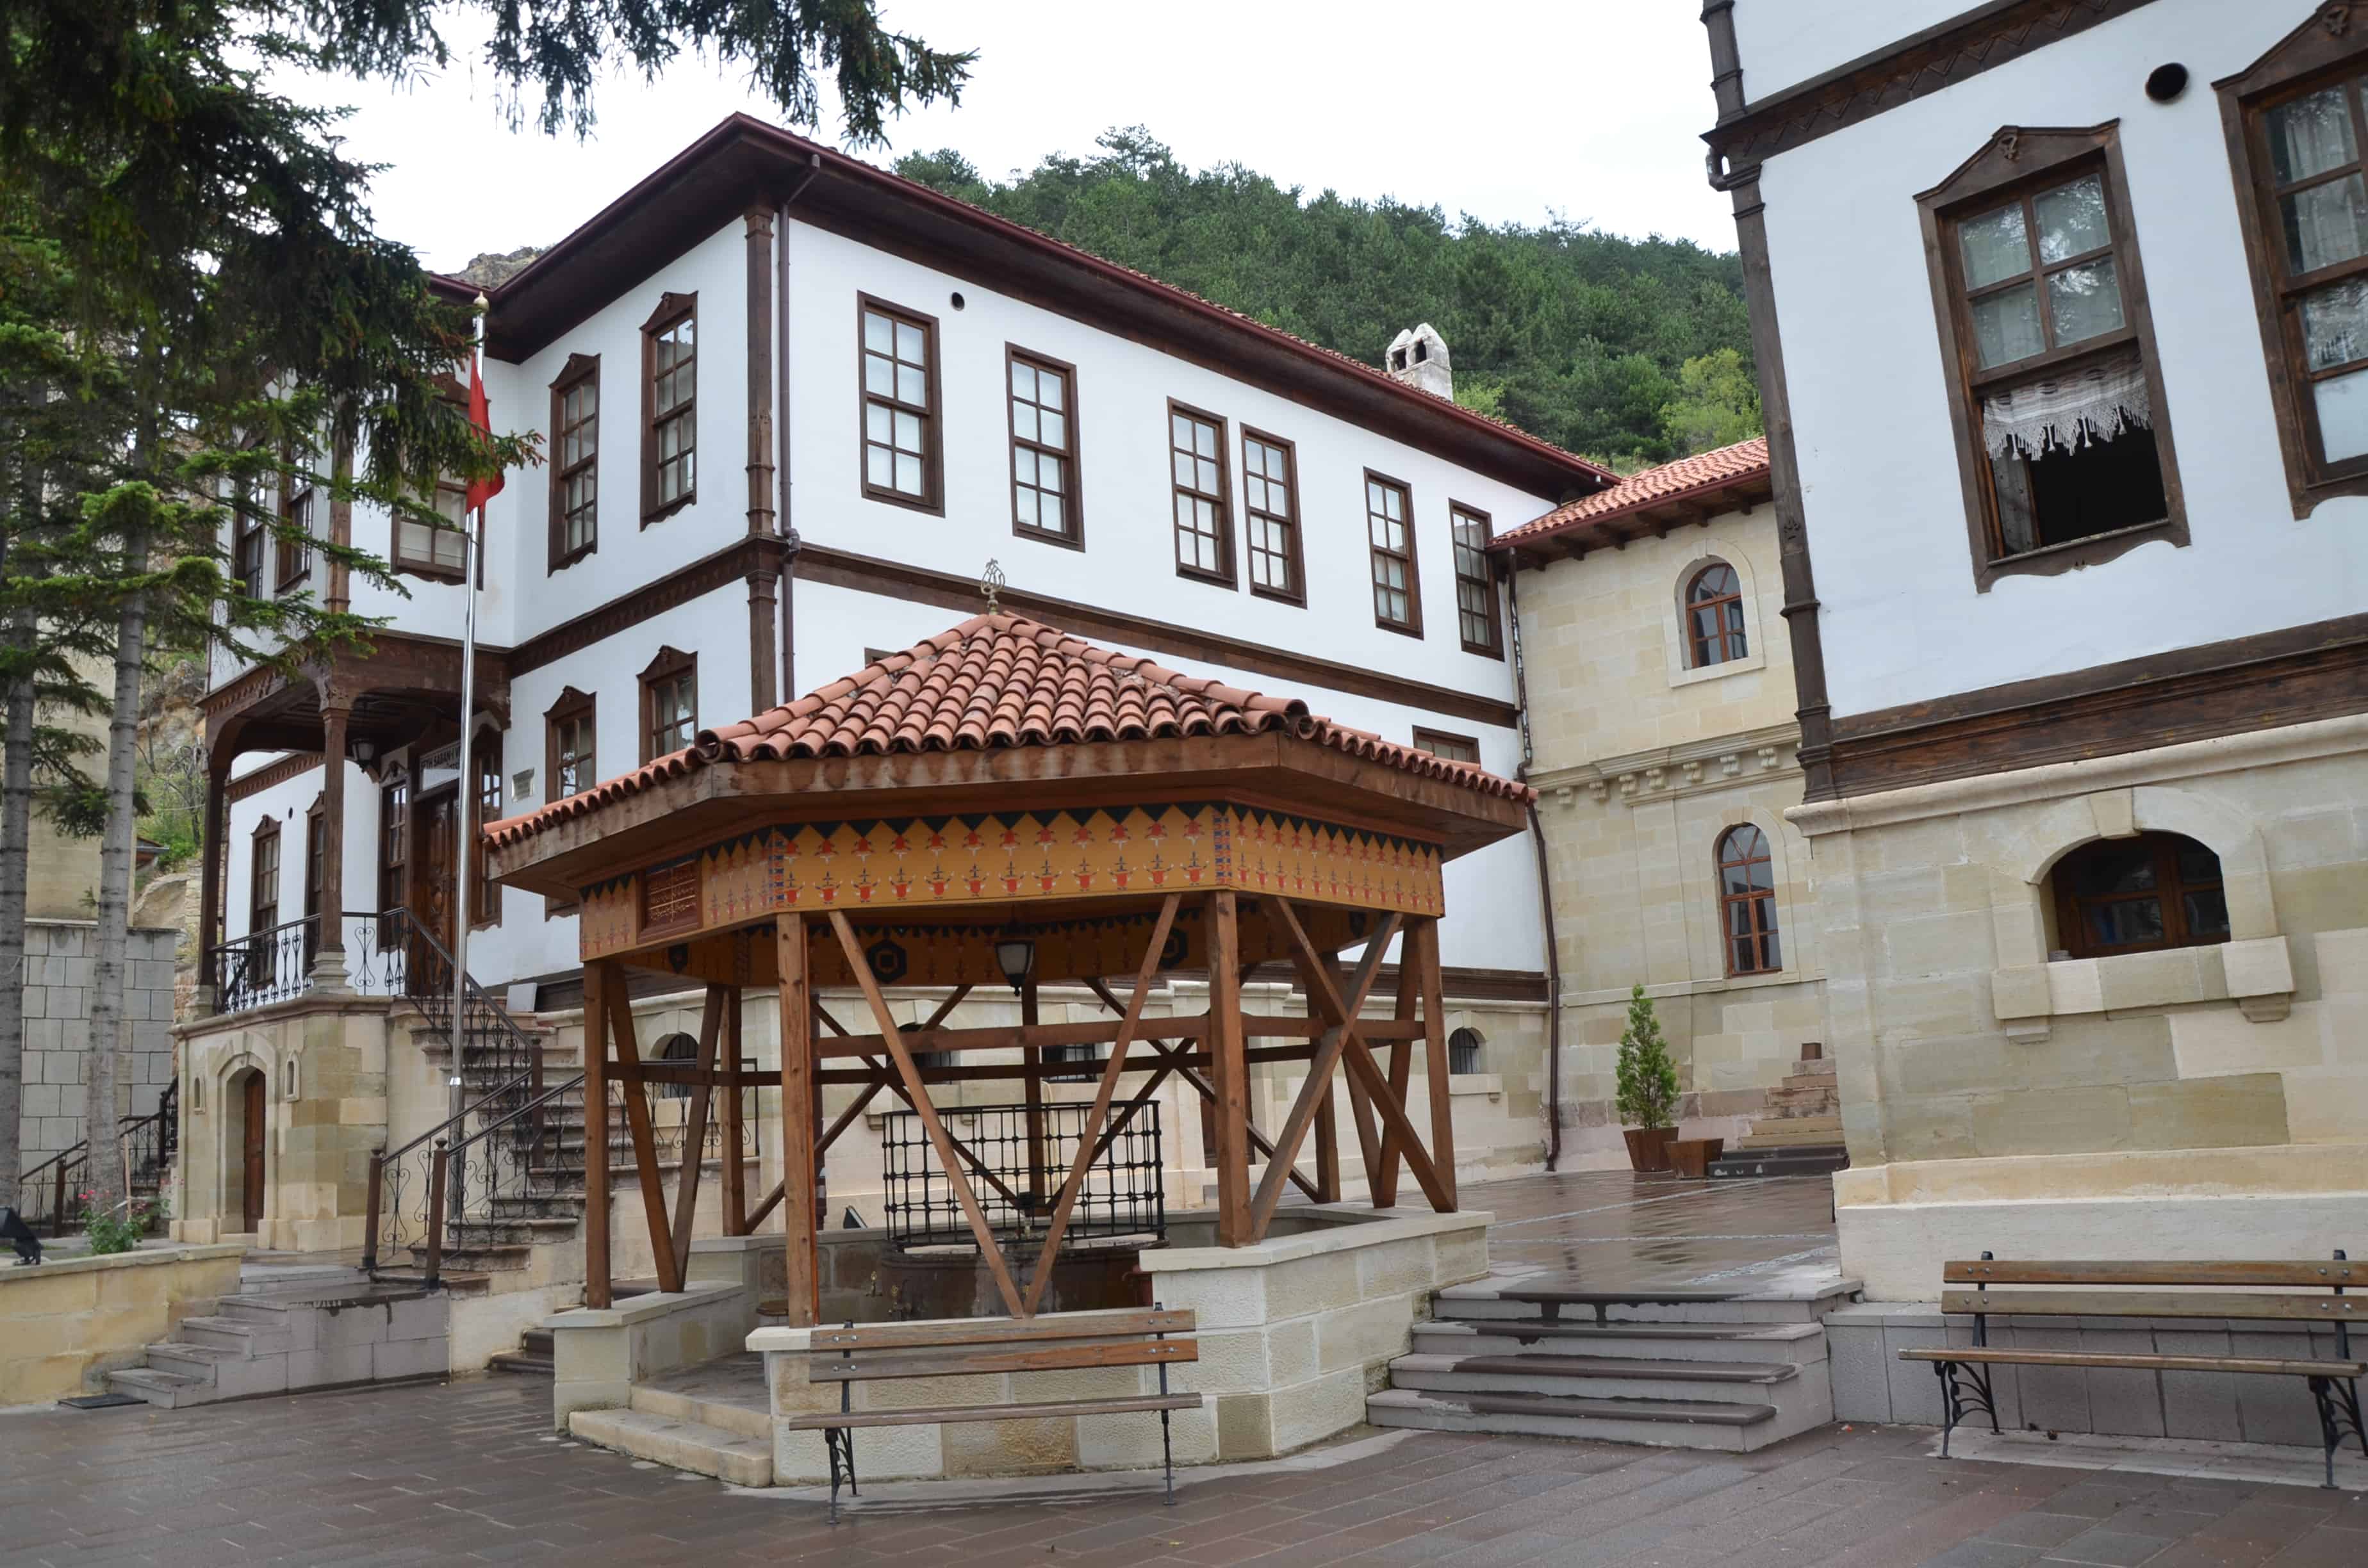 Sheikh Şaban–ı Veli Complex in Kastamonu, Turkey